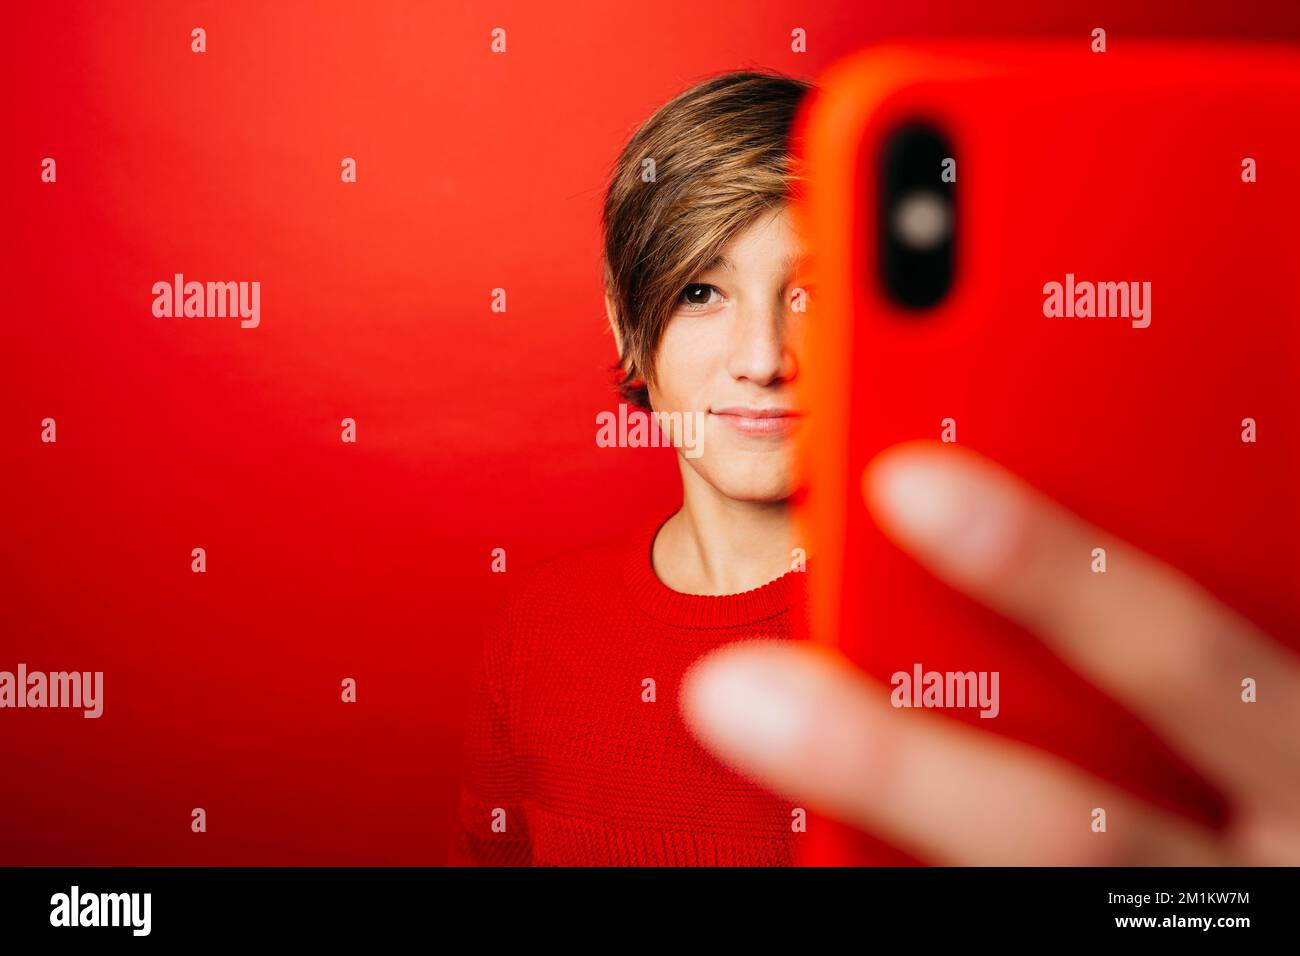 Pré-adolescent portant un chandail rouge sur fond rouge, prenant un selfie avec un smartphone rouge Banque D'Images